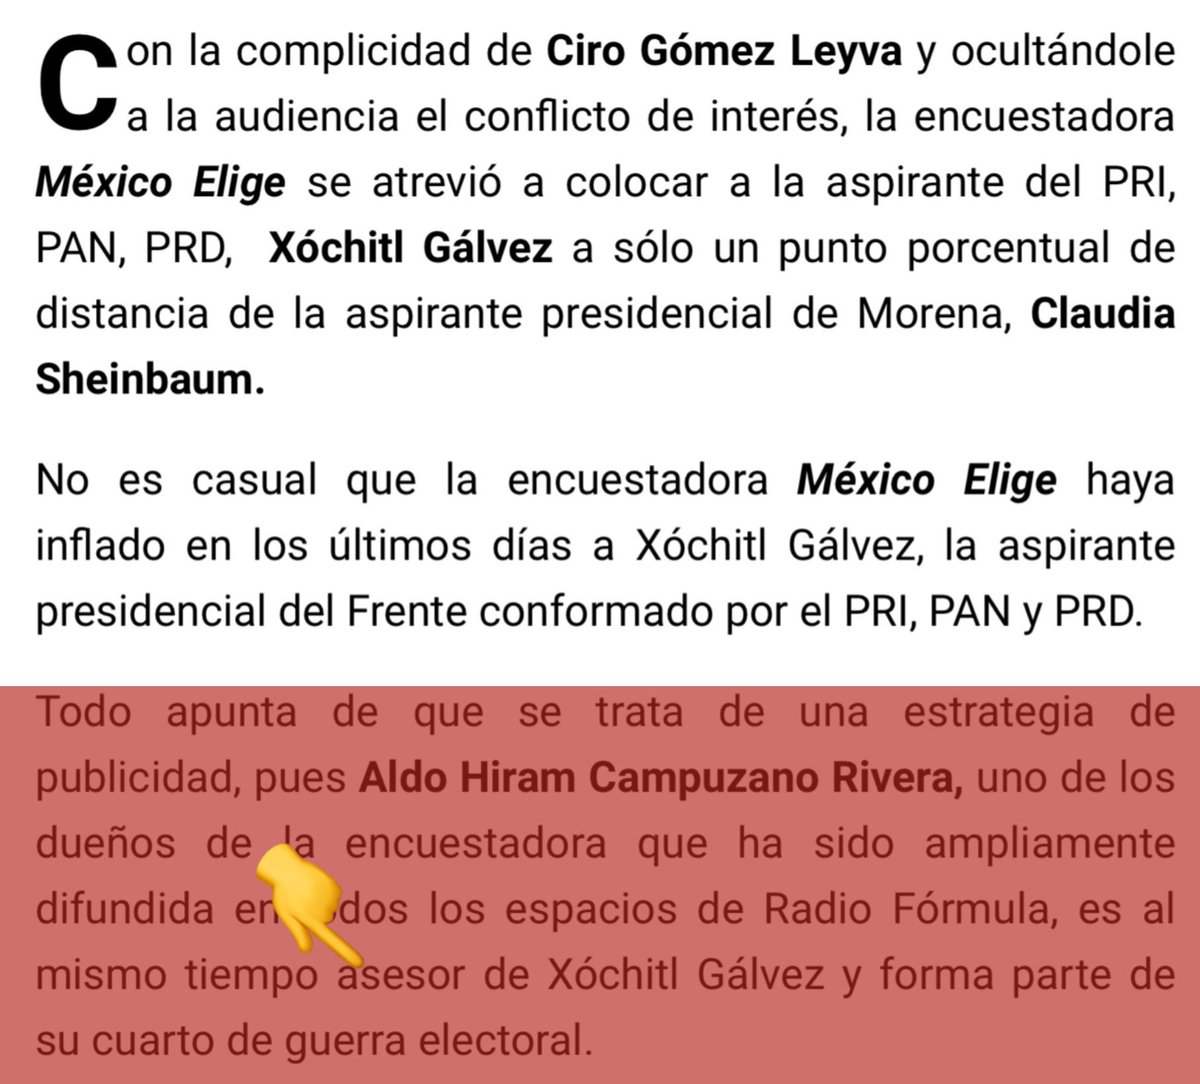 Oiga don Claudio X @ClaudioXGG olvidó agregar que la encuestadora “México elige” es propiedad de uno de los asesores y colaboradores de Xóchitl Gálvez. En realidad es una “estrategia de Publicidad” engañapendejos que ni usted se la cree. #OposicionMasPendejaQueHaExistido RT 🤡👇